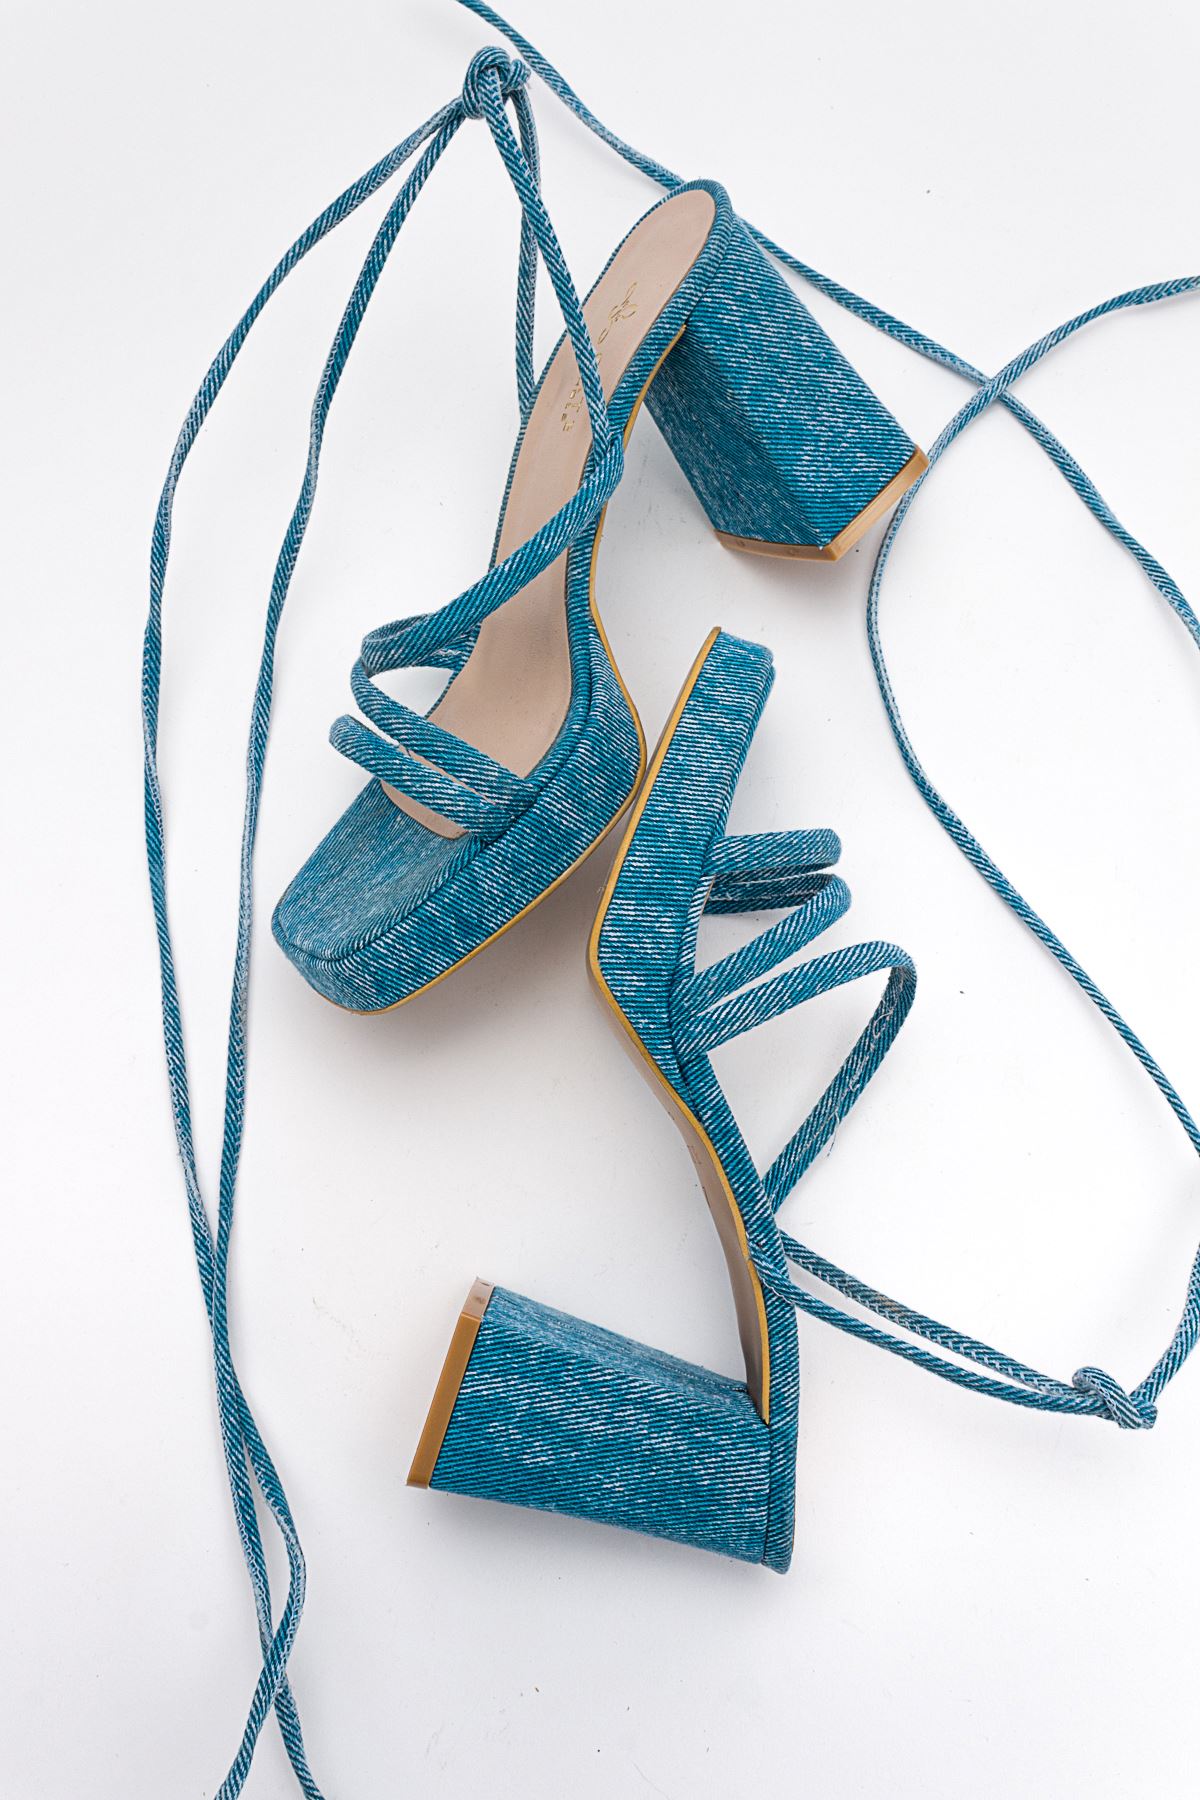 Kadın Bantlı ve İpli Platform Topuklu Kadın Sandalet Carisa Platform Gate Shoes-Kot Mavi